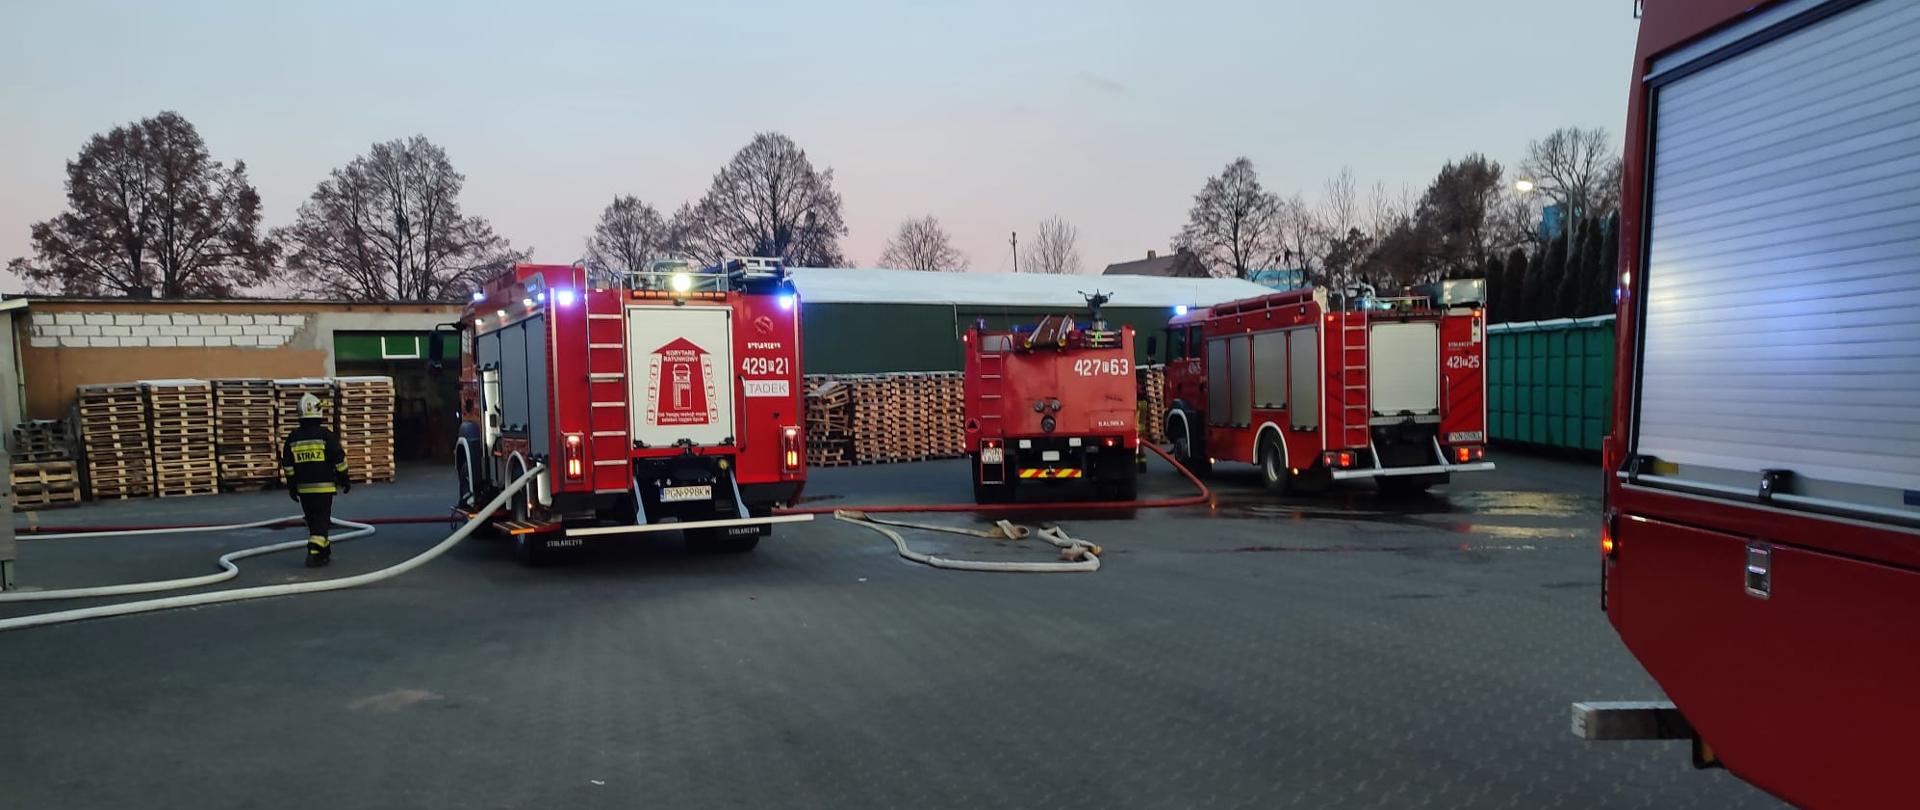 Na zdjęciach widać tyły trzech samochodów pożarniczych stojące na placu zakładu produkcyjnego. Z pojazdów podawana jest wężami pożarniczymi woda